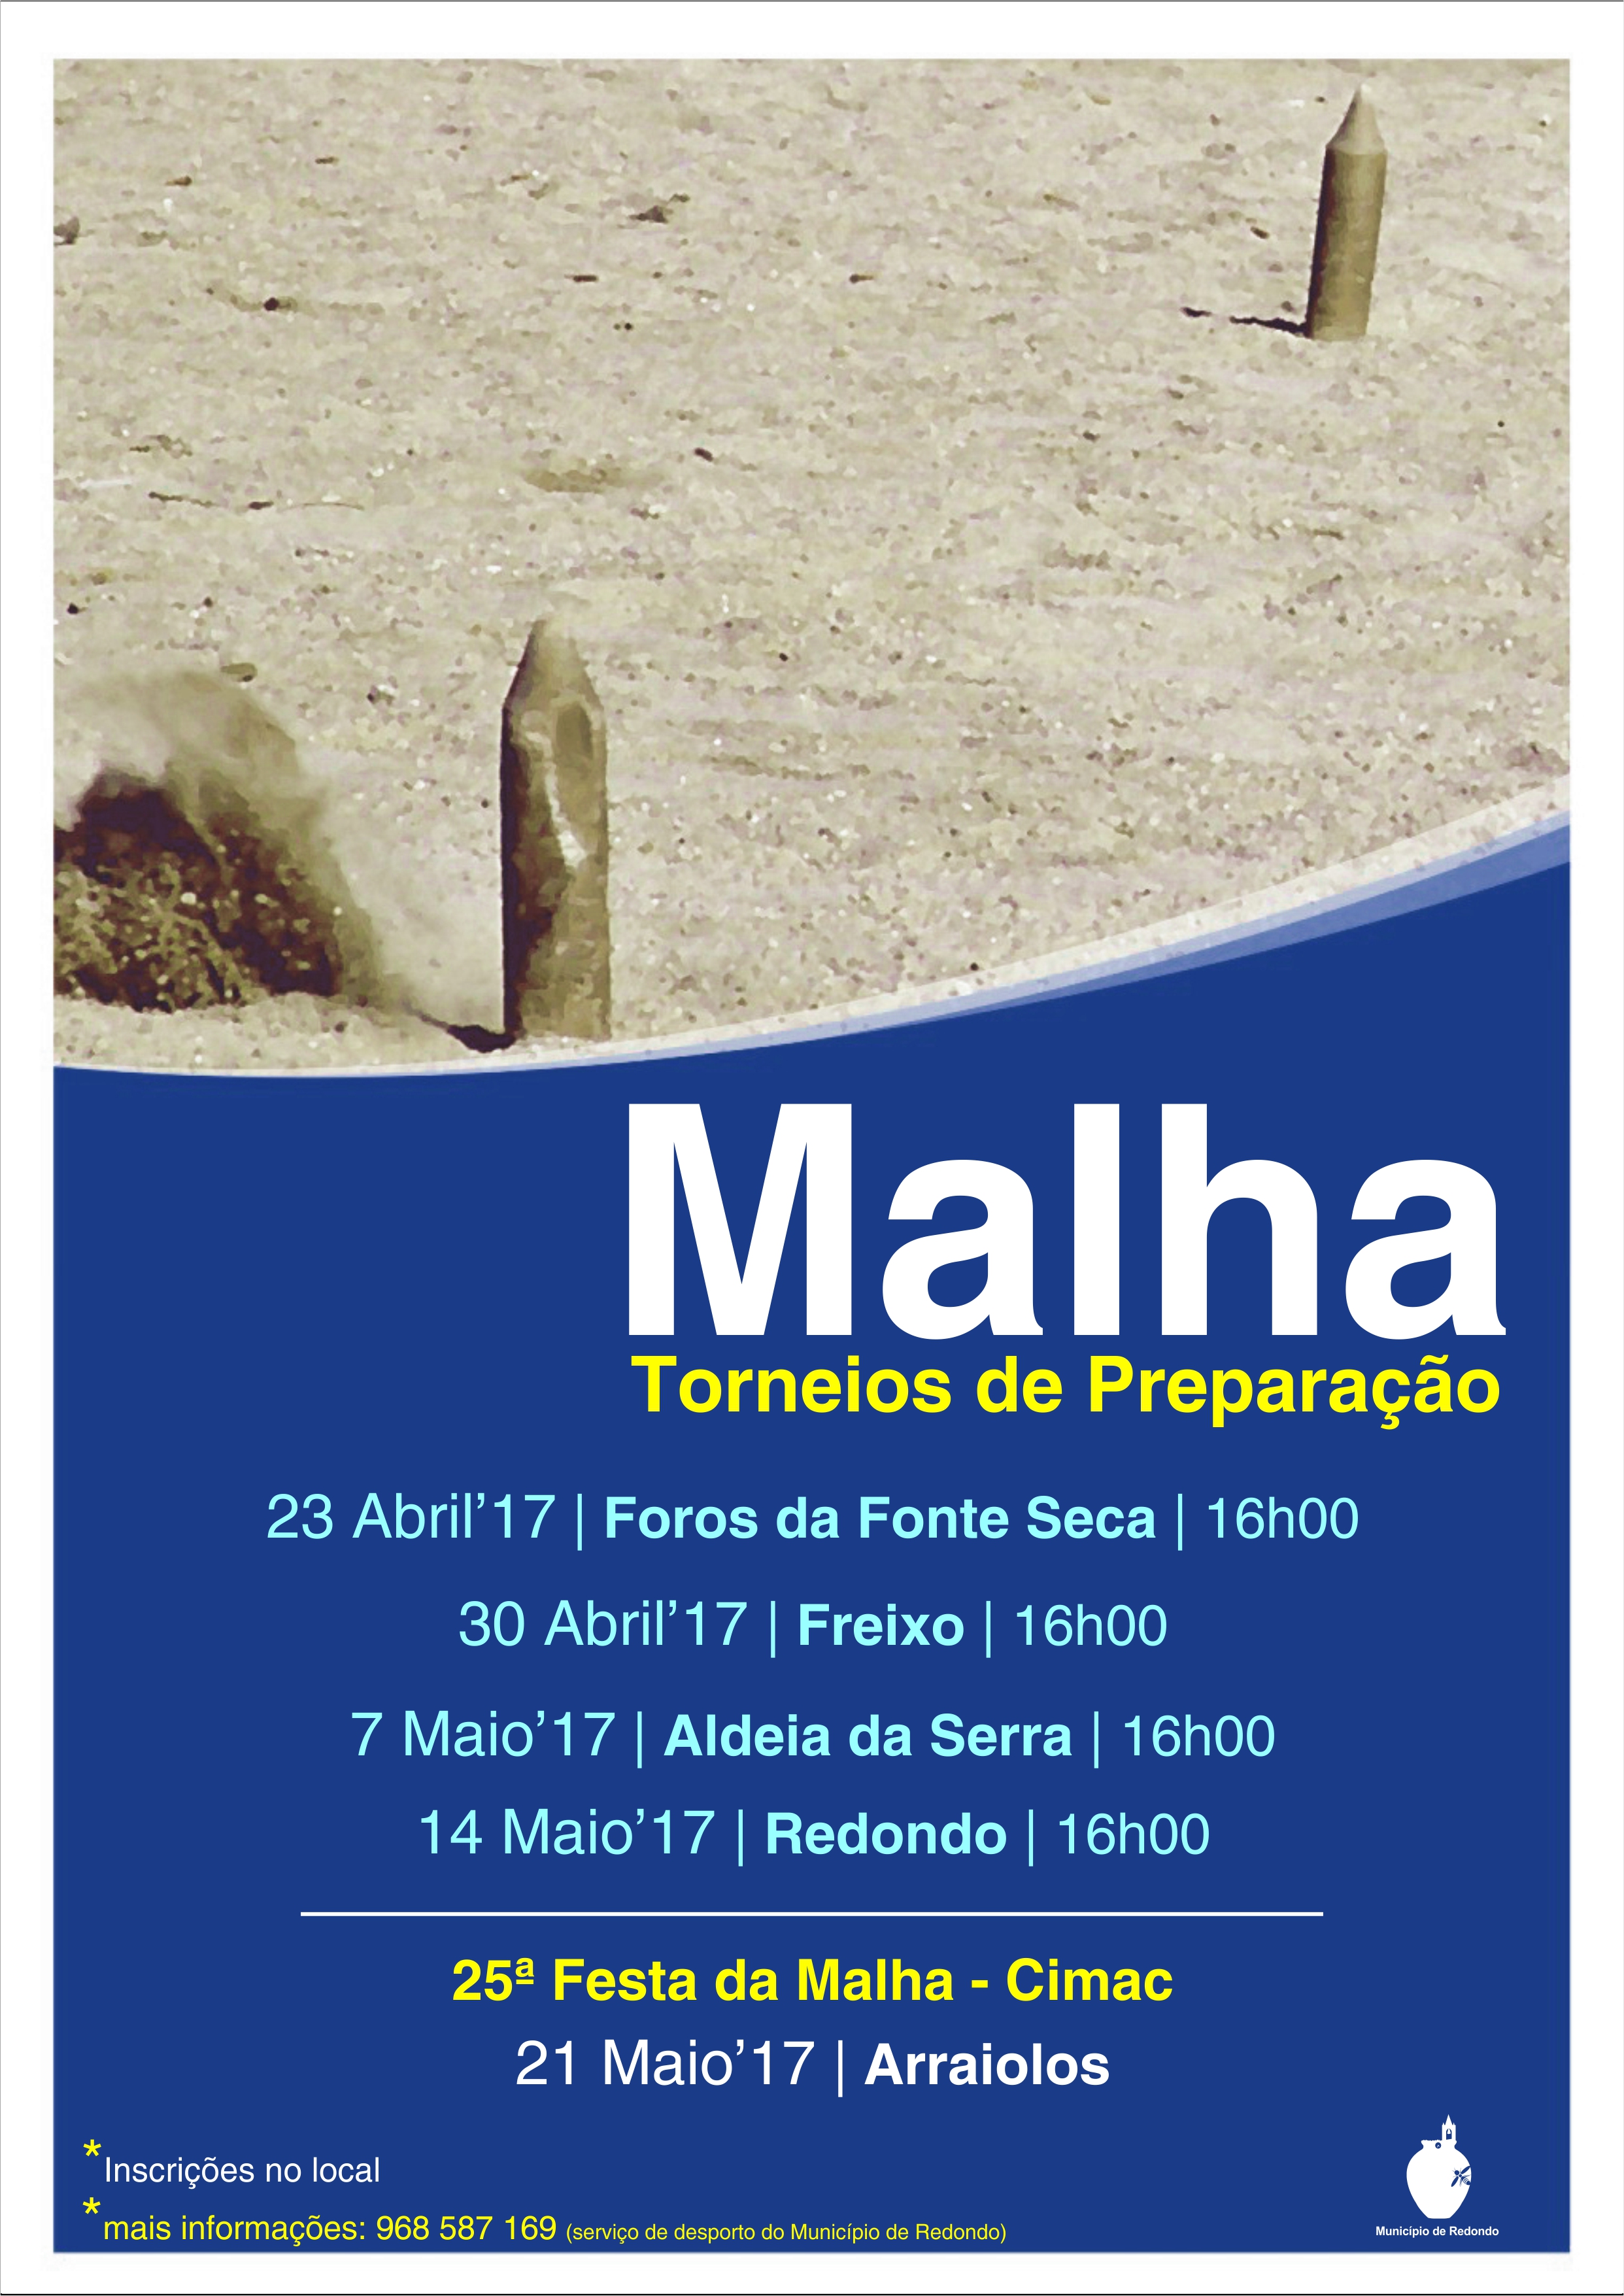 MalhaTorneiosdePreparao_F_0_1594719373.